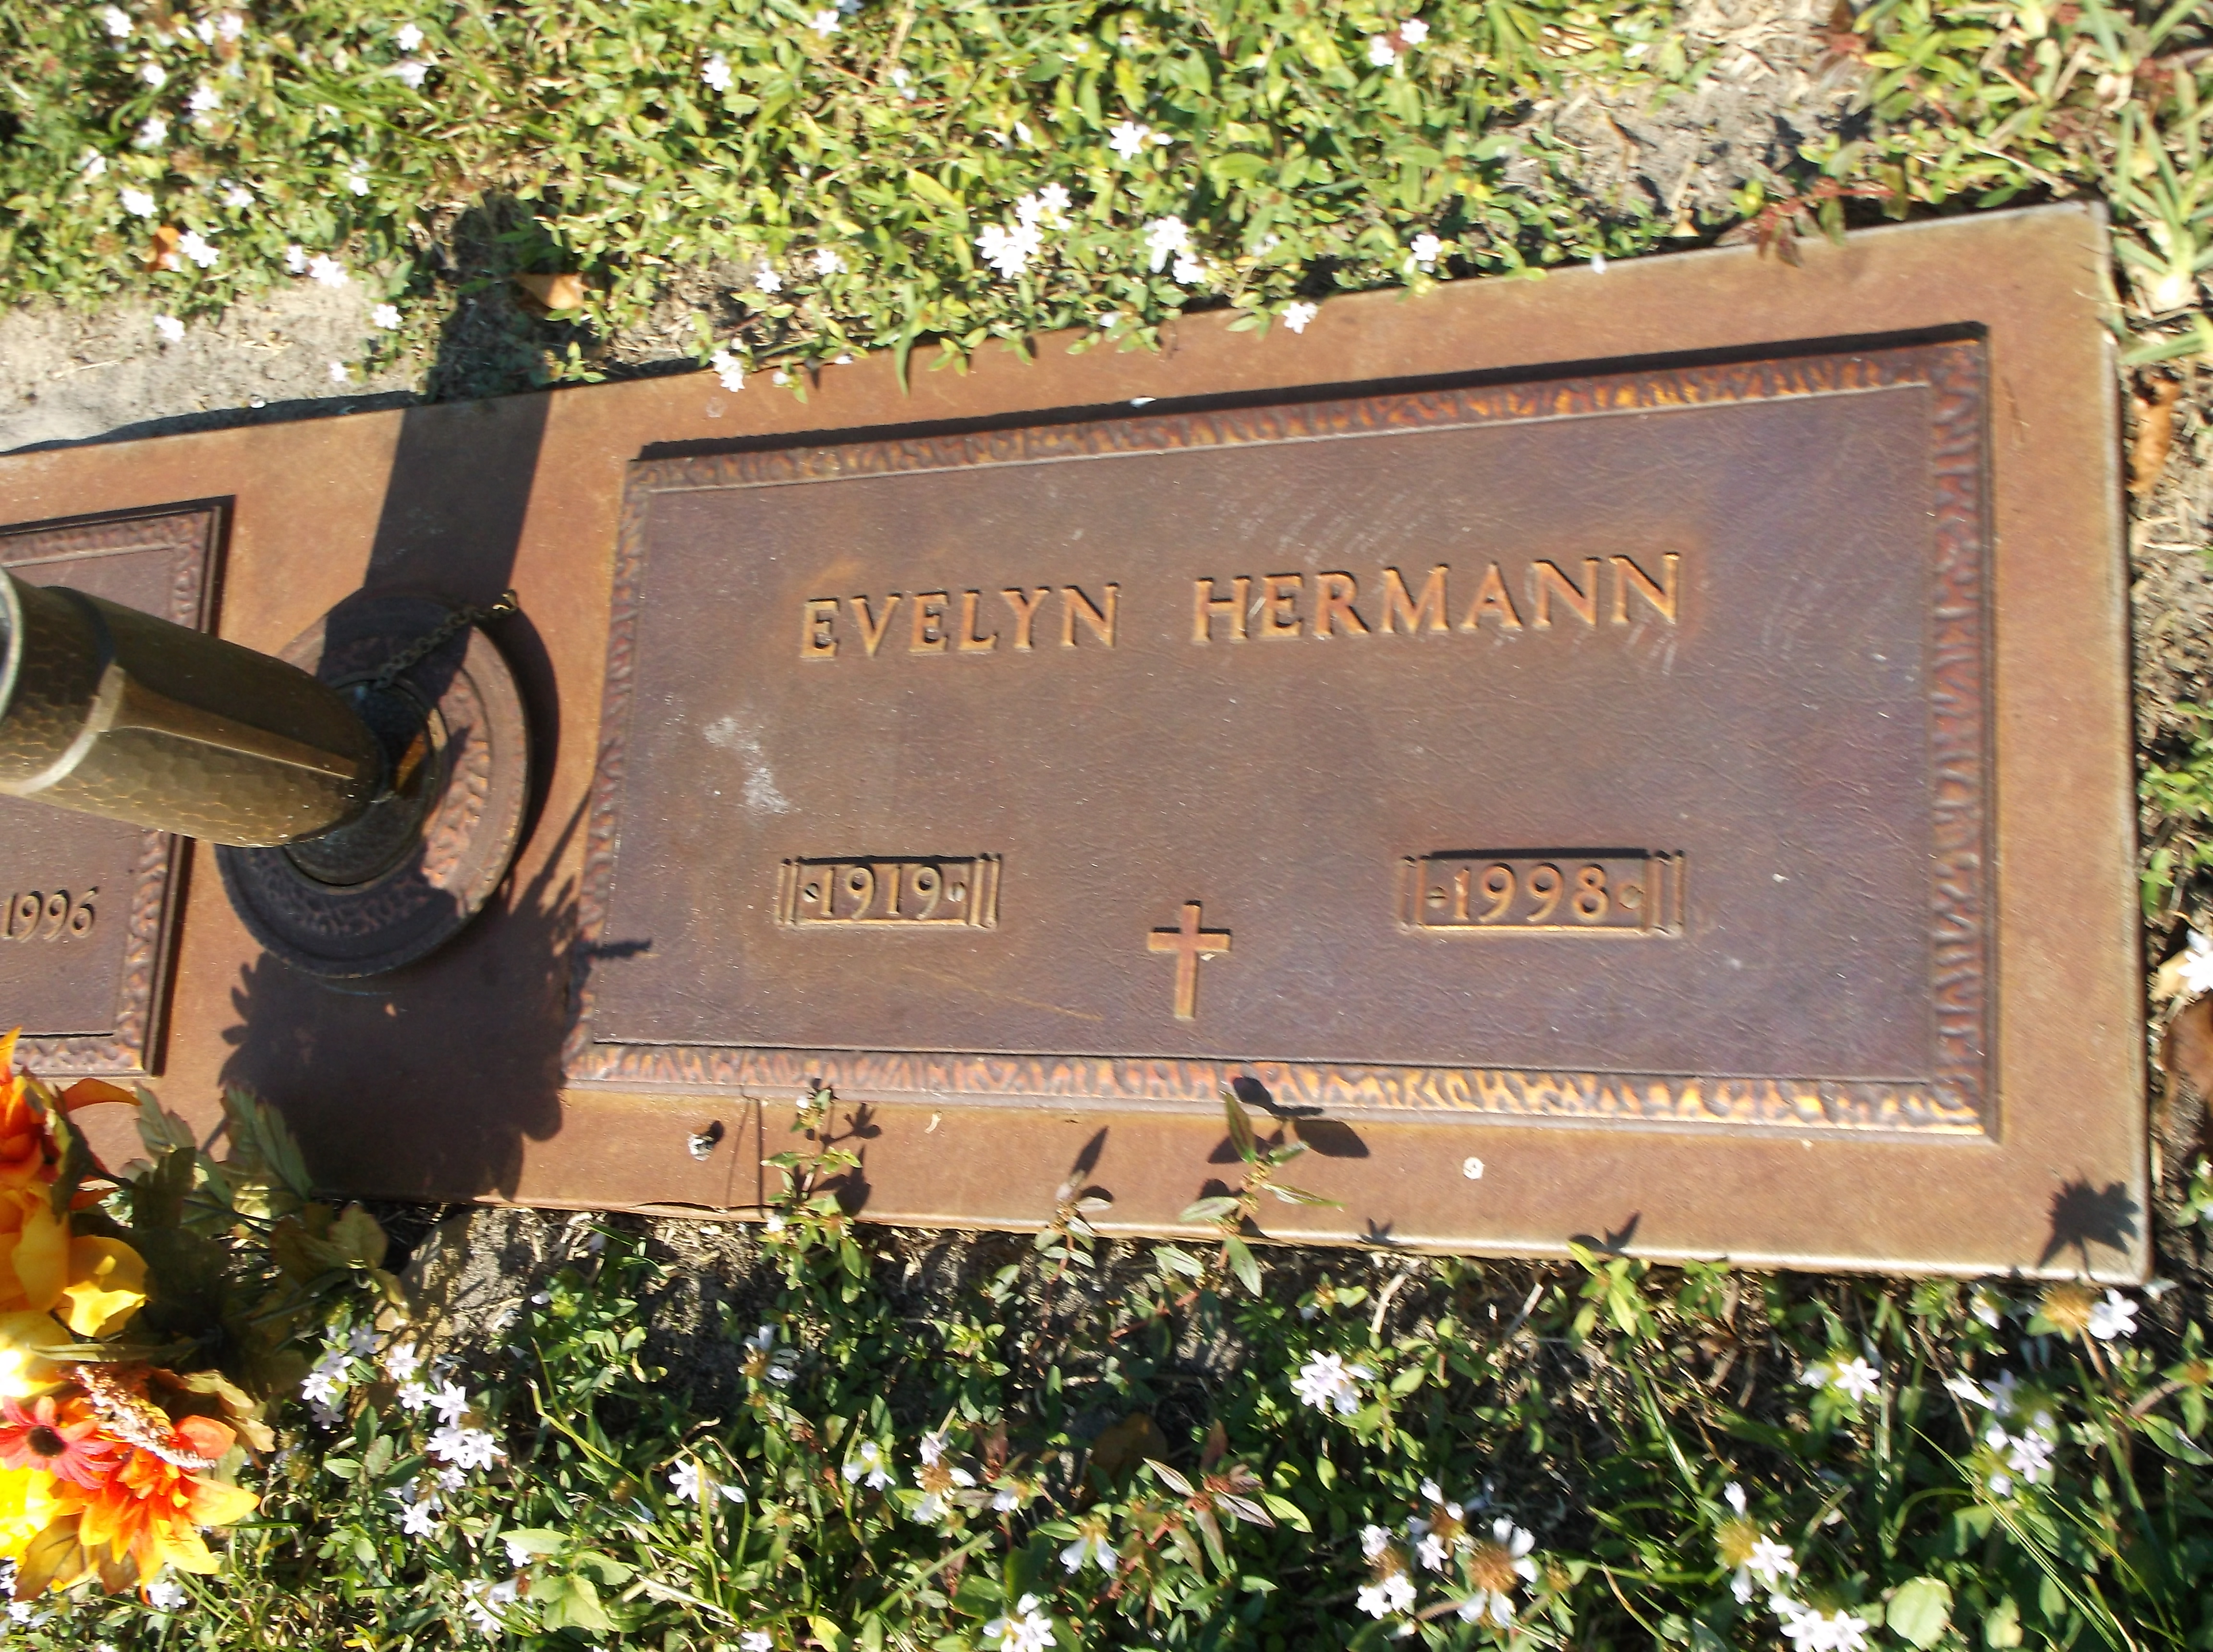 Evelyn Hermann